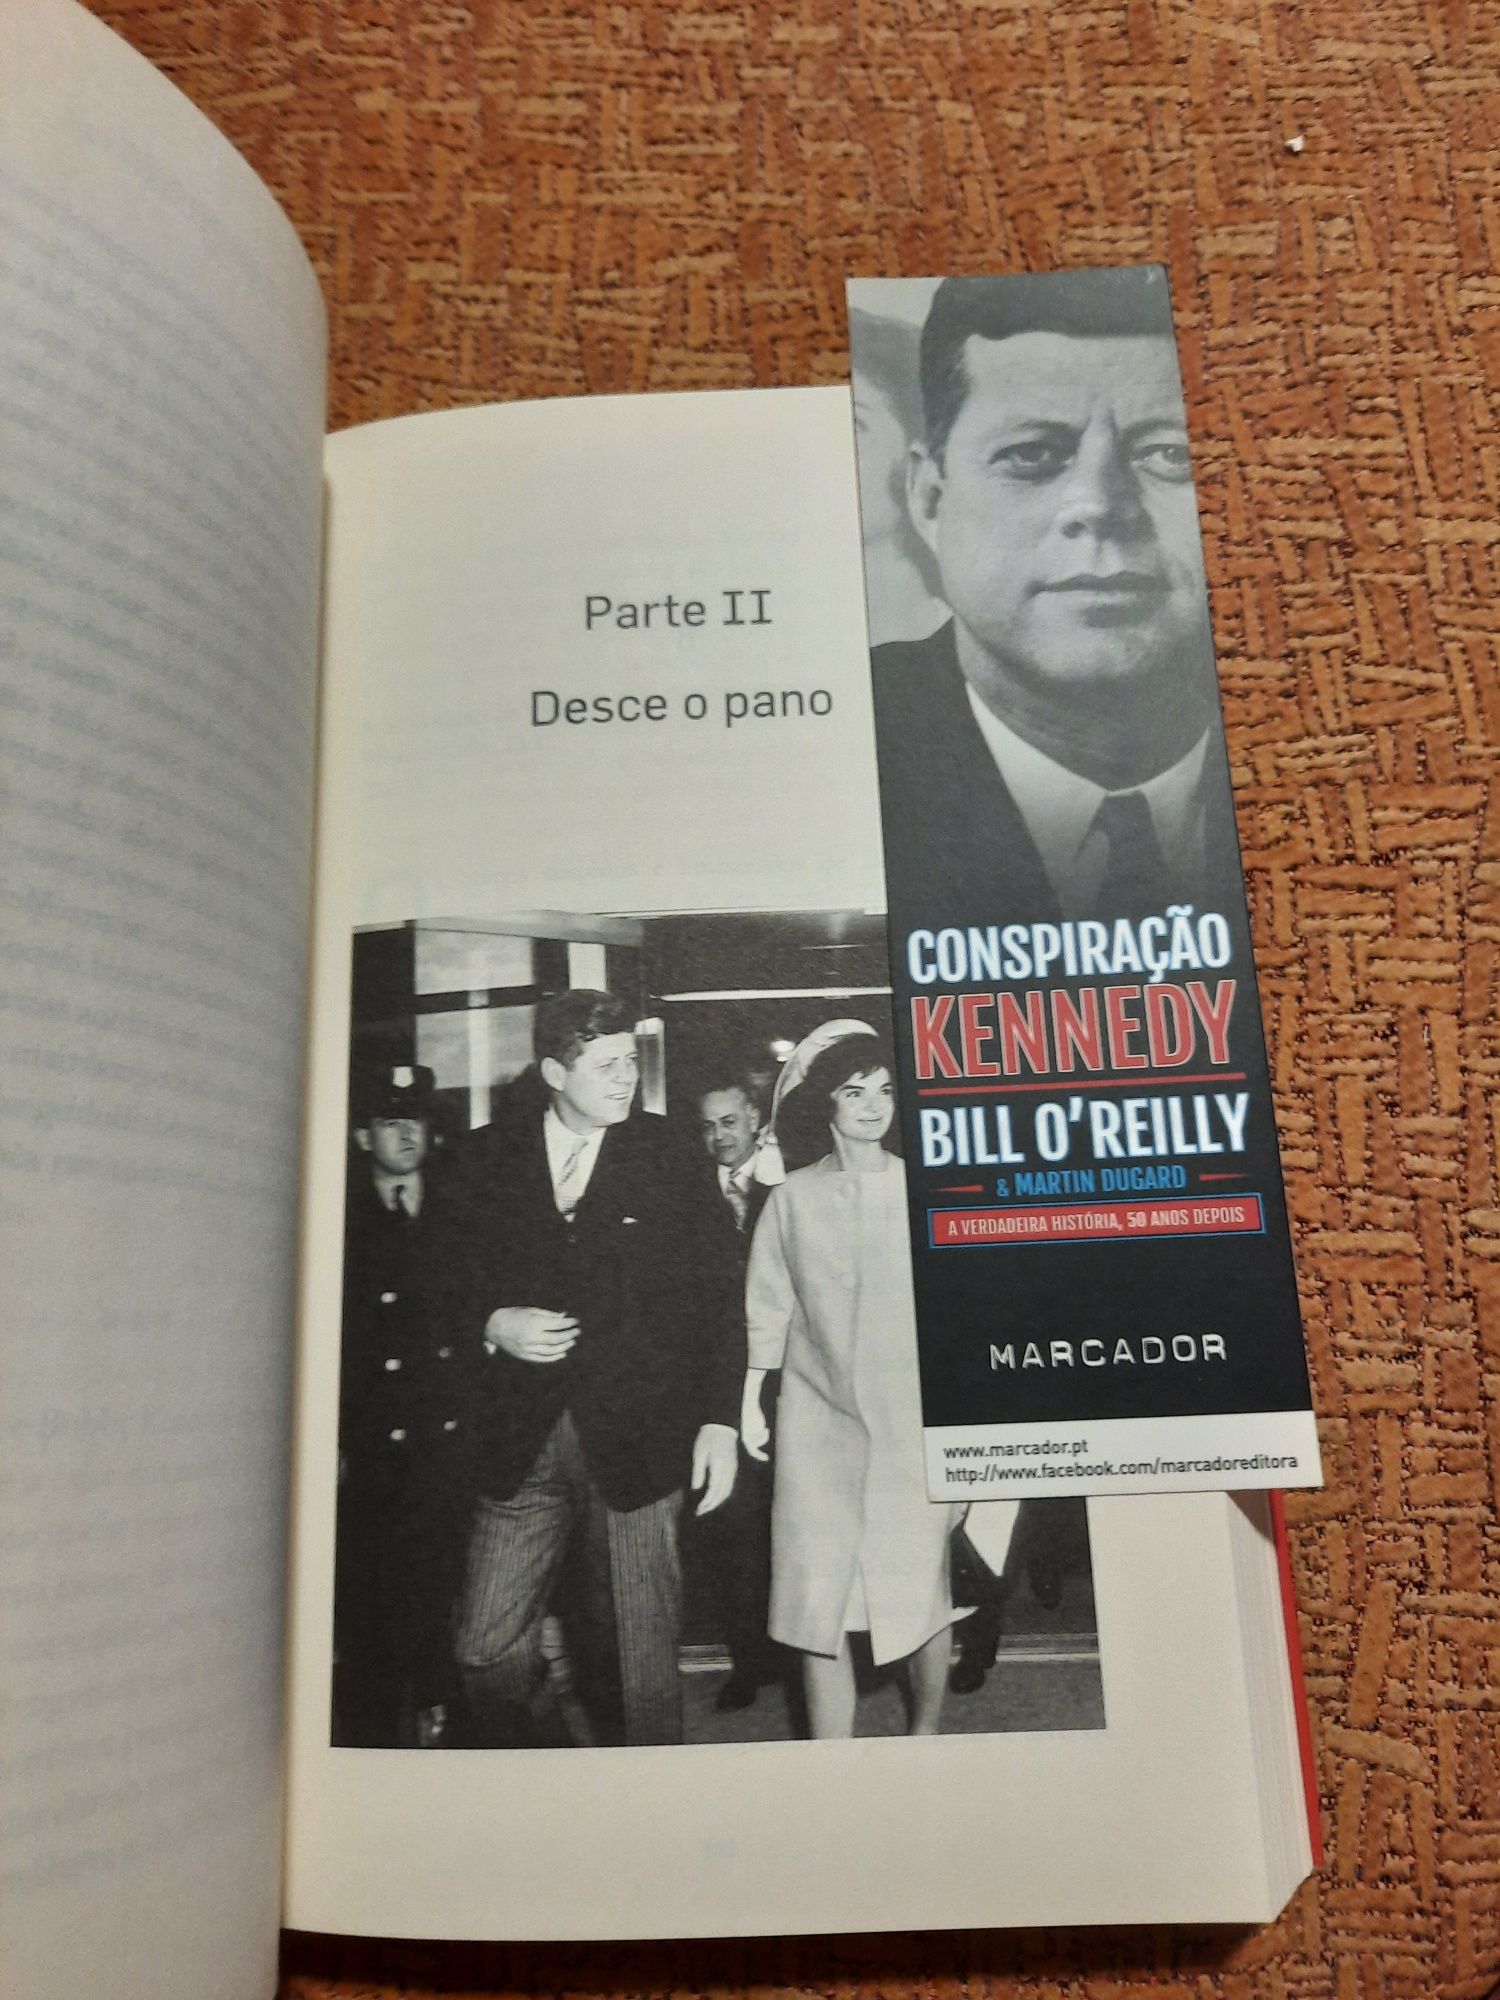 Conspiração Kennedy (Bill O'Reilly e Martin Dugard)
de Bill O'Reilly e